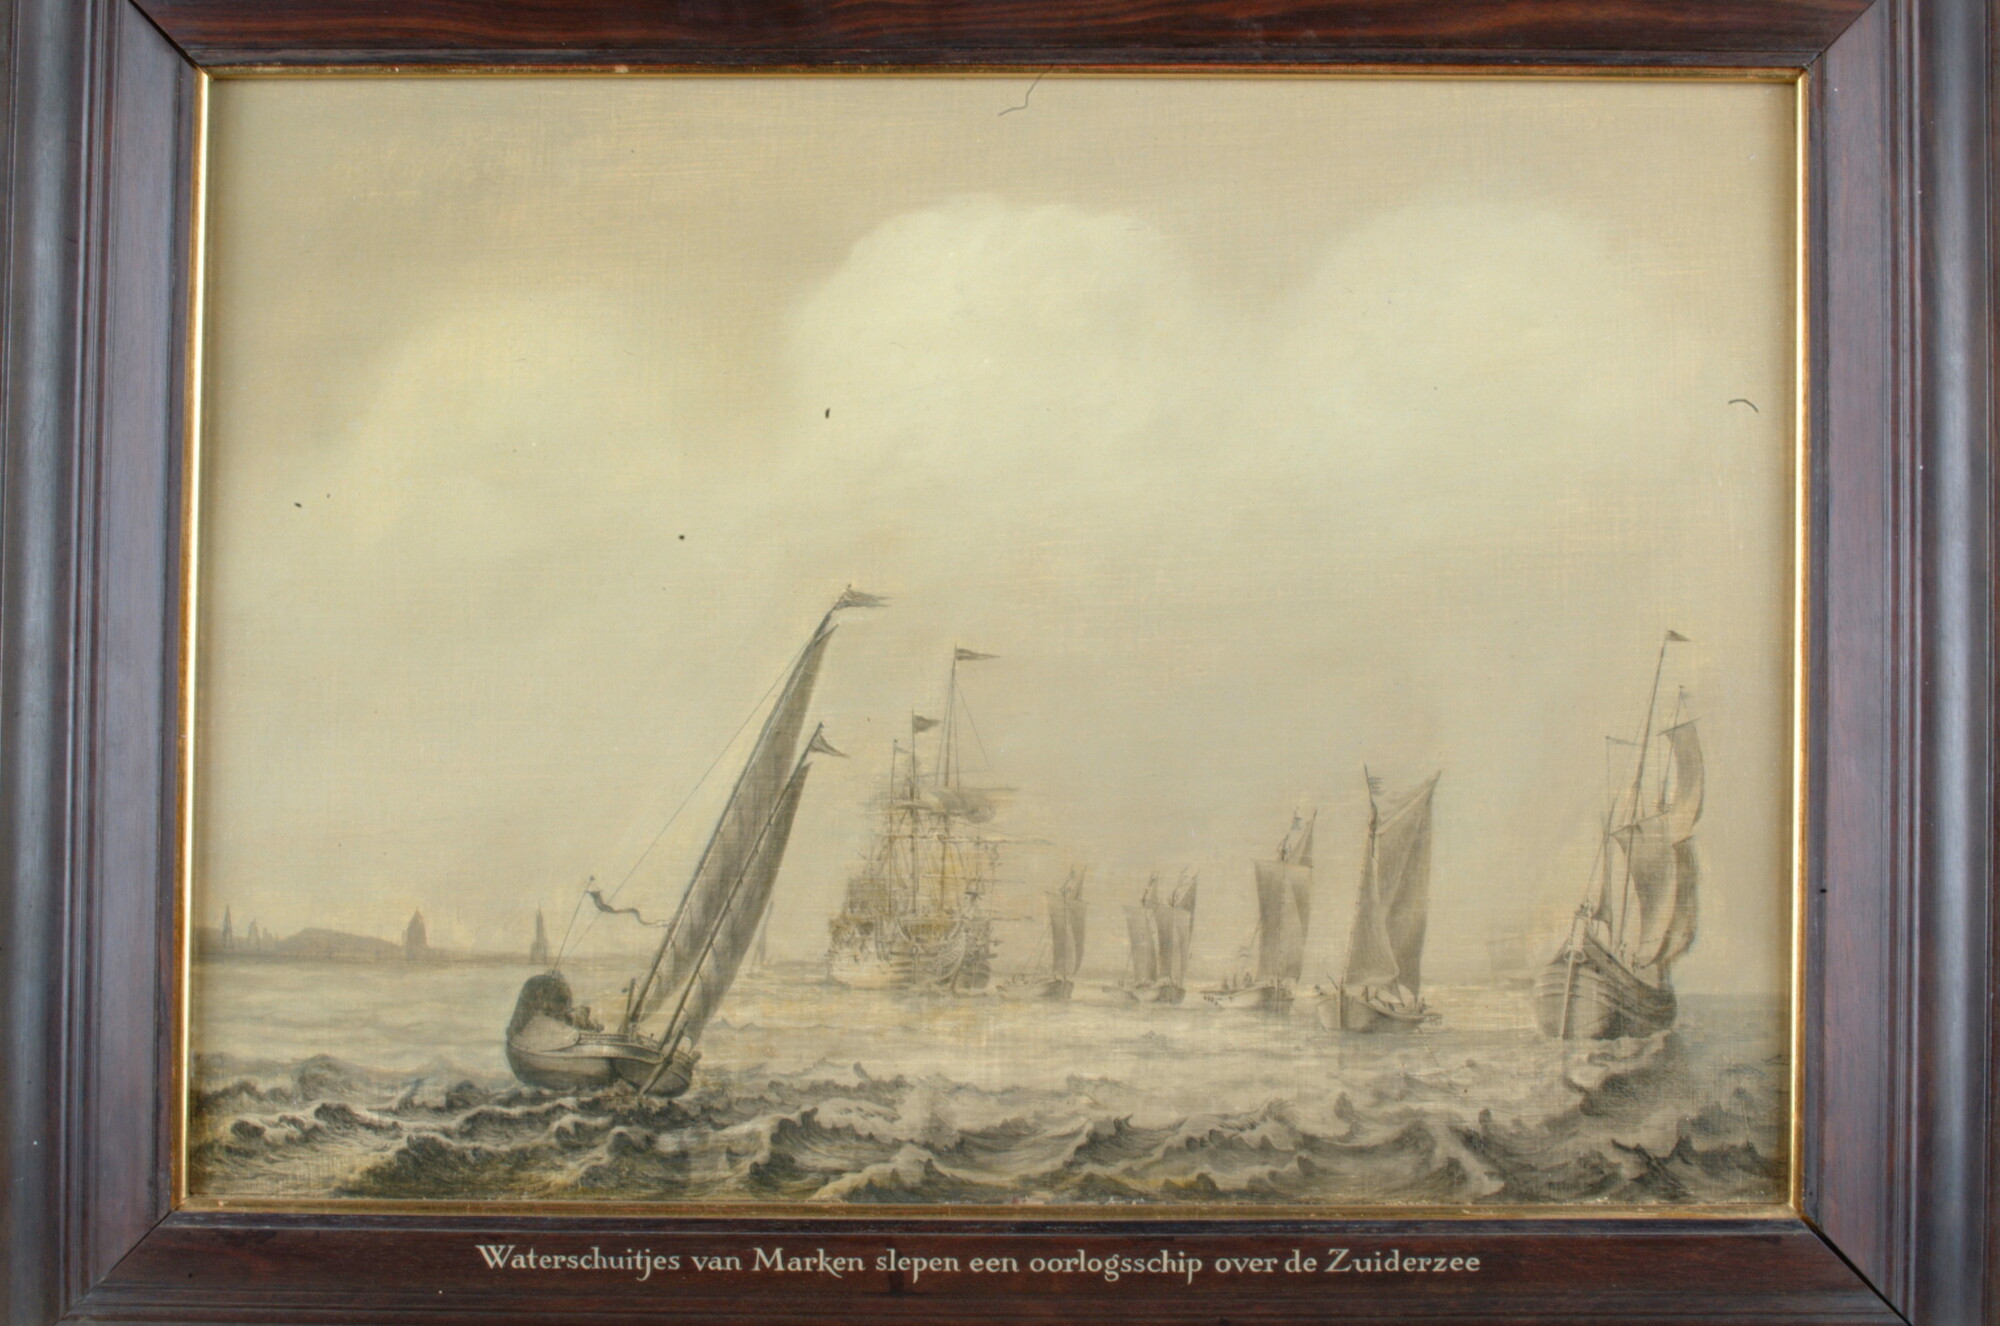 A.1707; Het slepen van een oorlogsschip door Marker waterschepen over de Zuiderzee; schilderij